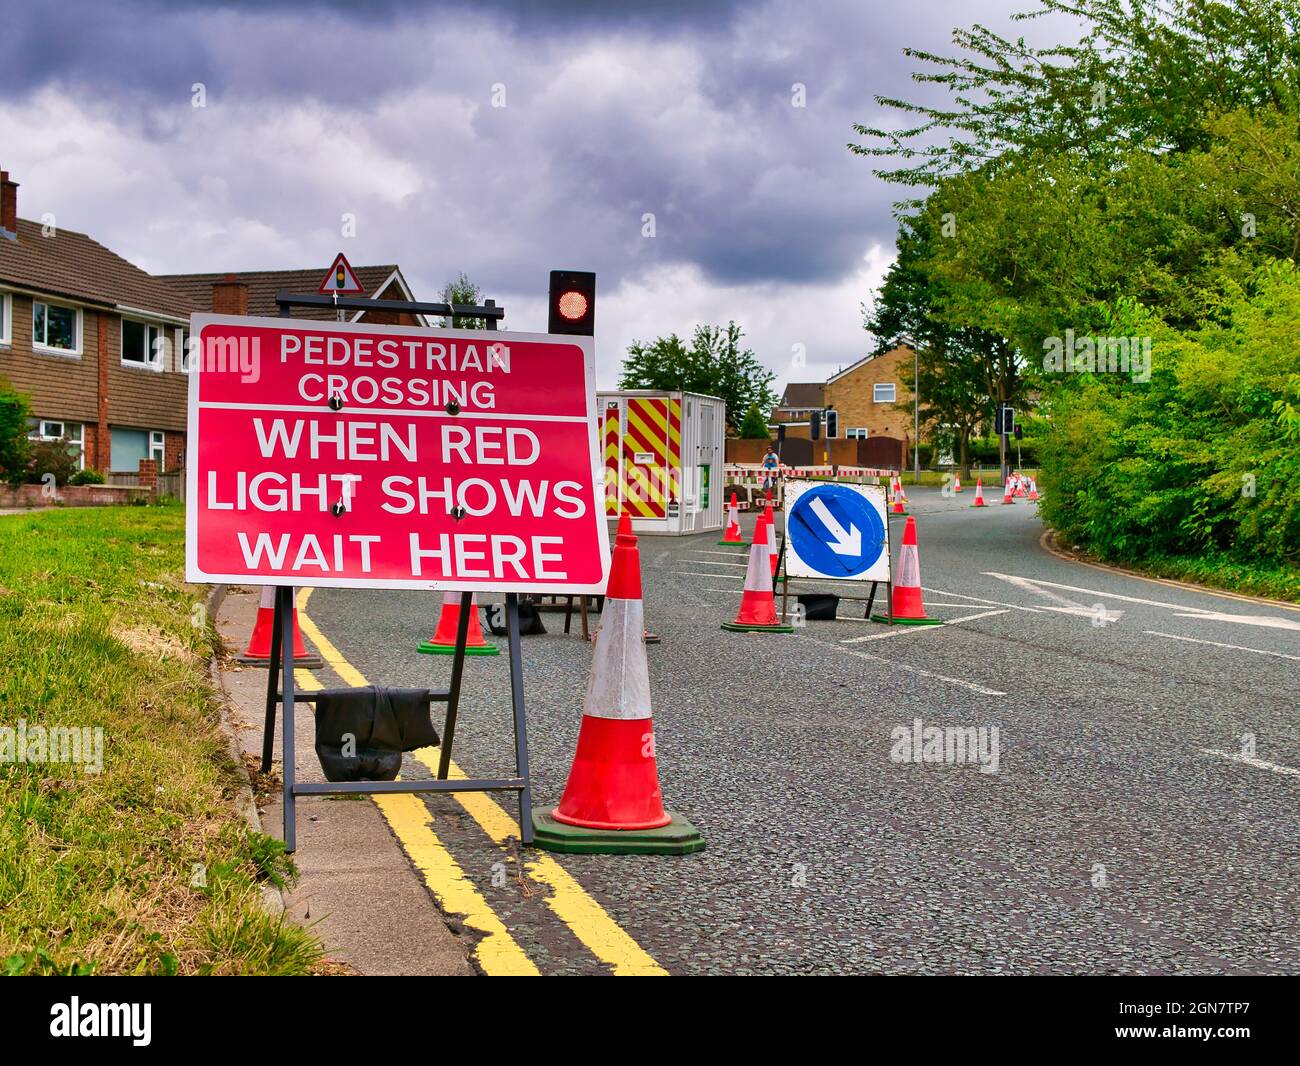 Ein rotes Schild mit weißer Beschriftung weist Autofahrer darauf hin, dass vor den Bauarbeiten eine Fußgängerüberfahrt liegt und das an einer Leselampe warten sollte. Stockfoto